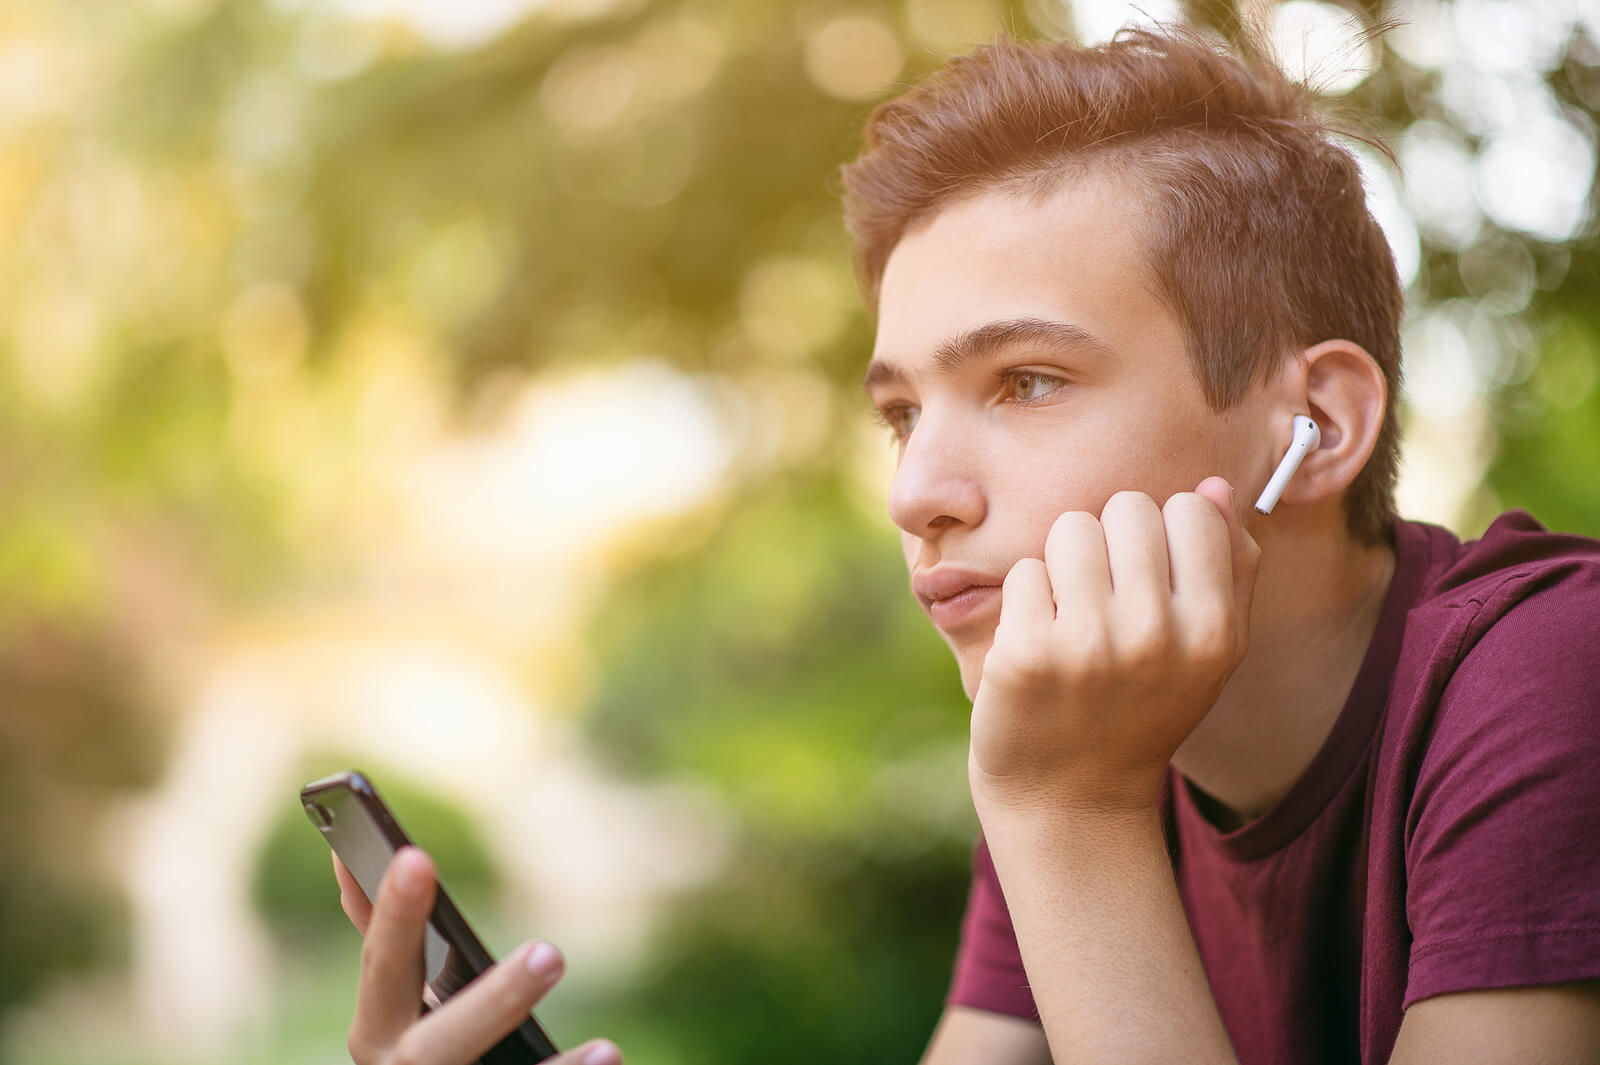 Chico adolescente enganchado al móvil, una de las adicciones sin sustancia más comunes.